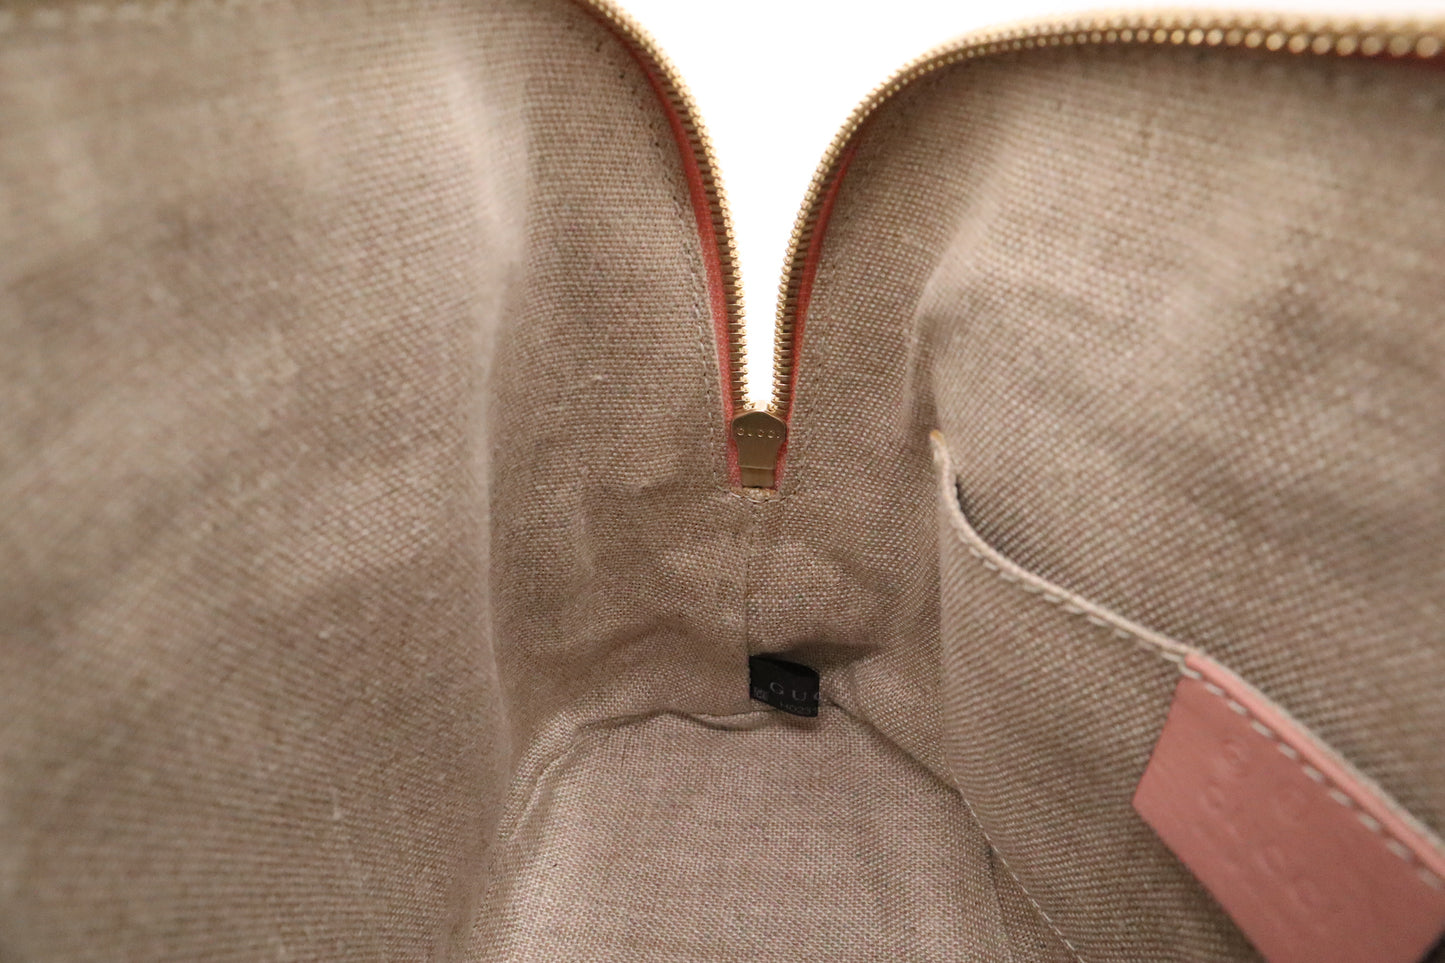 Gucci Mini Dome Bag in Blush Pink Microguccissima Leather